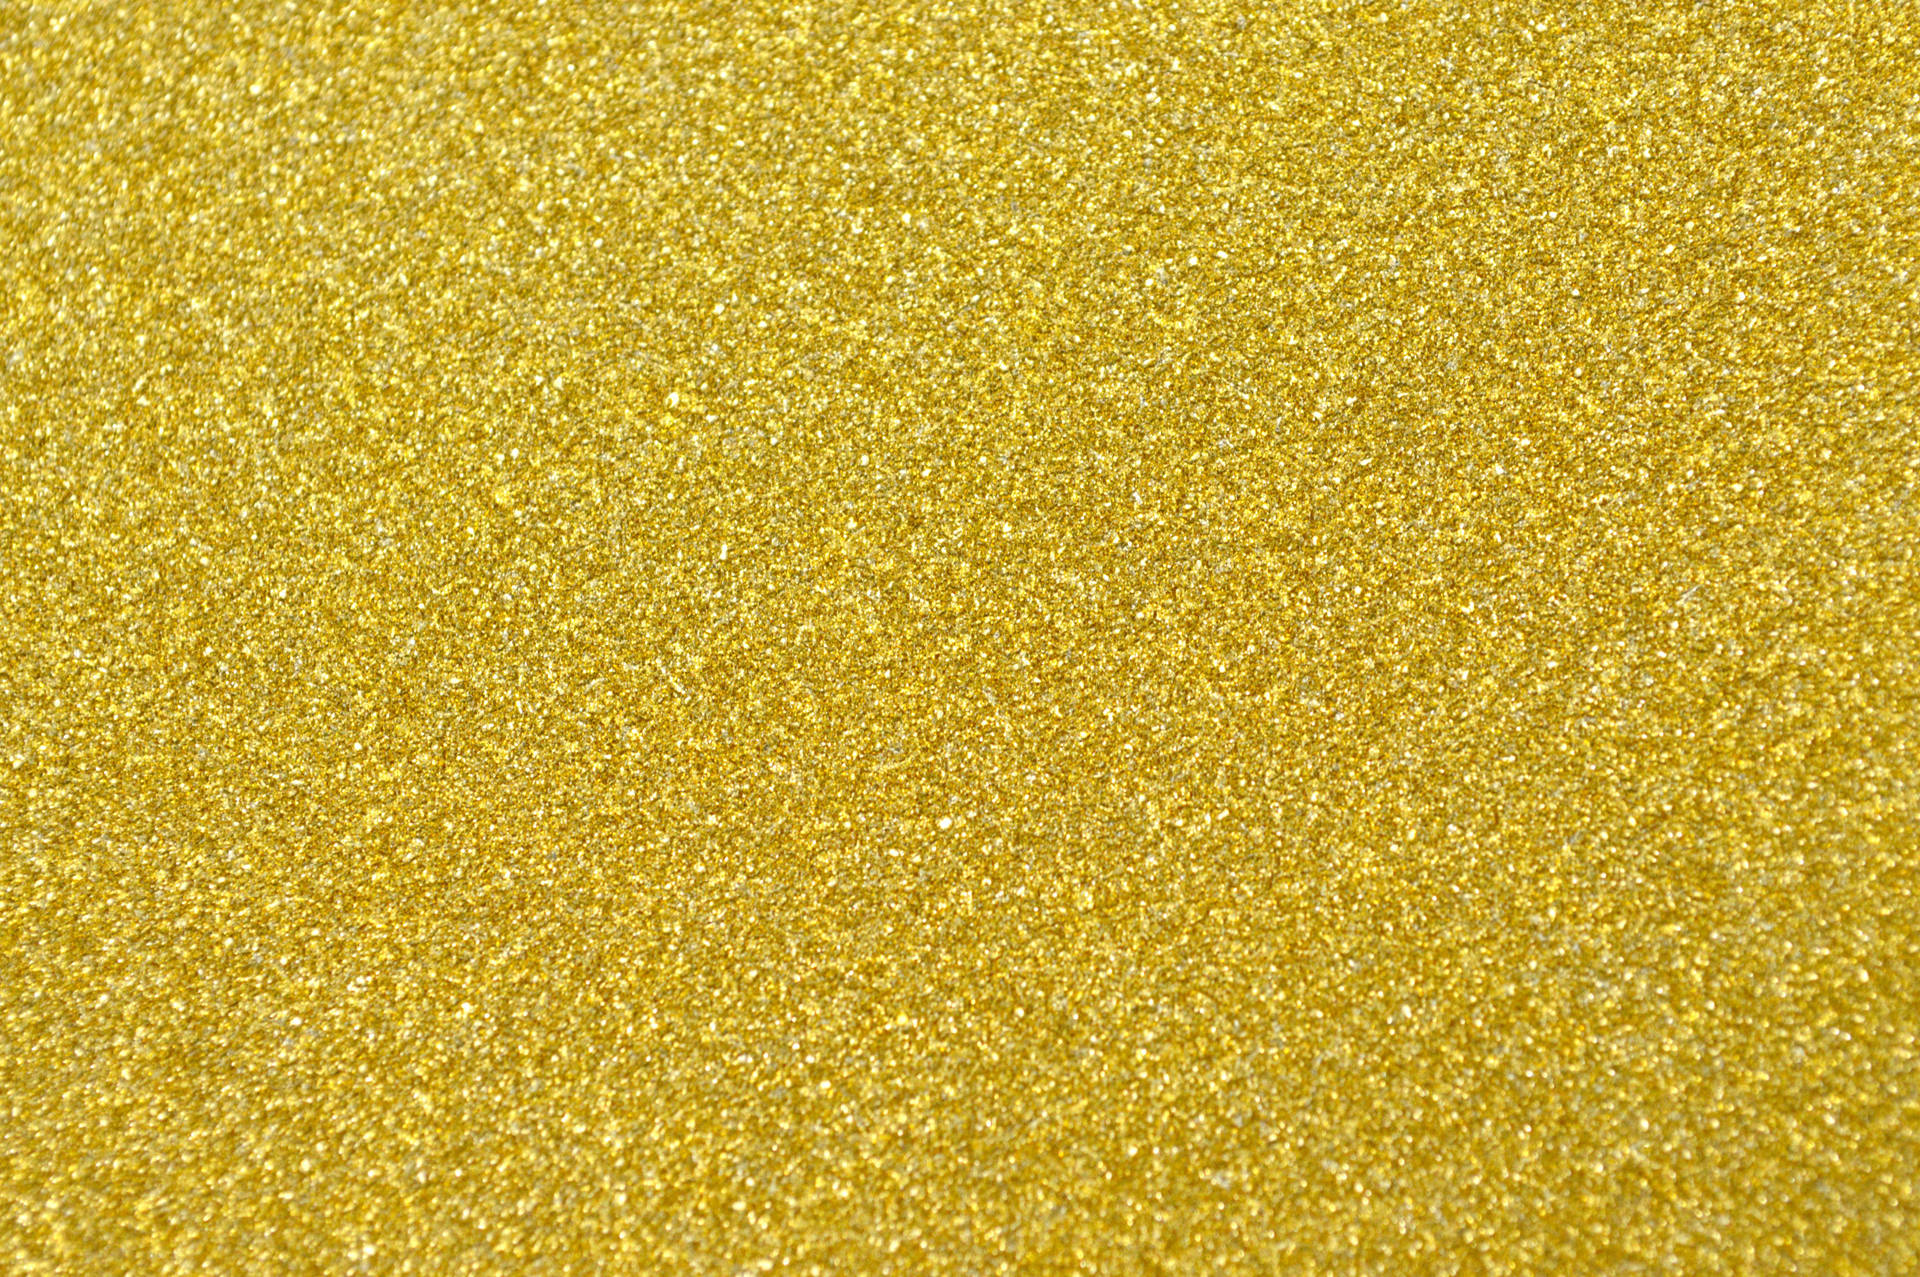 Glittery Plain Gold Wallpaper Wallpaper